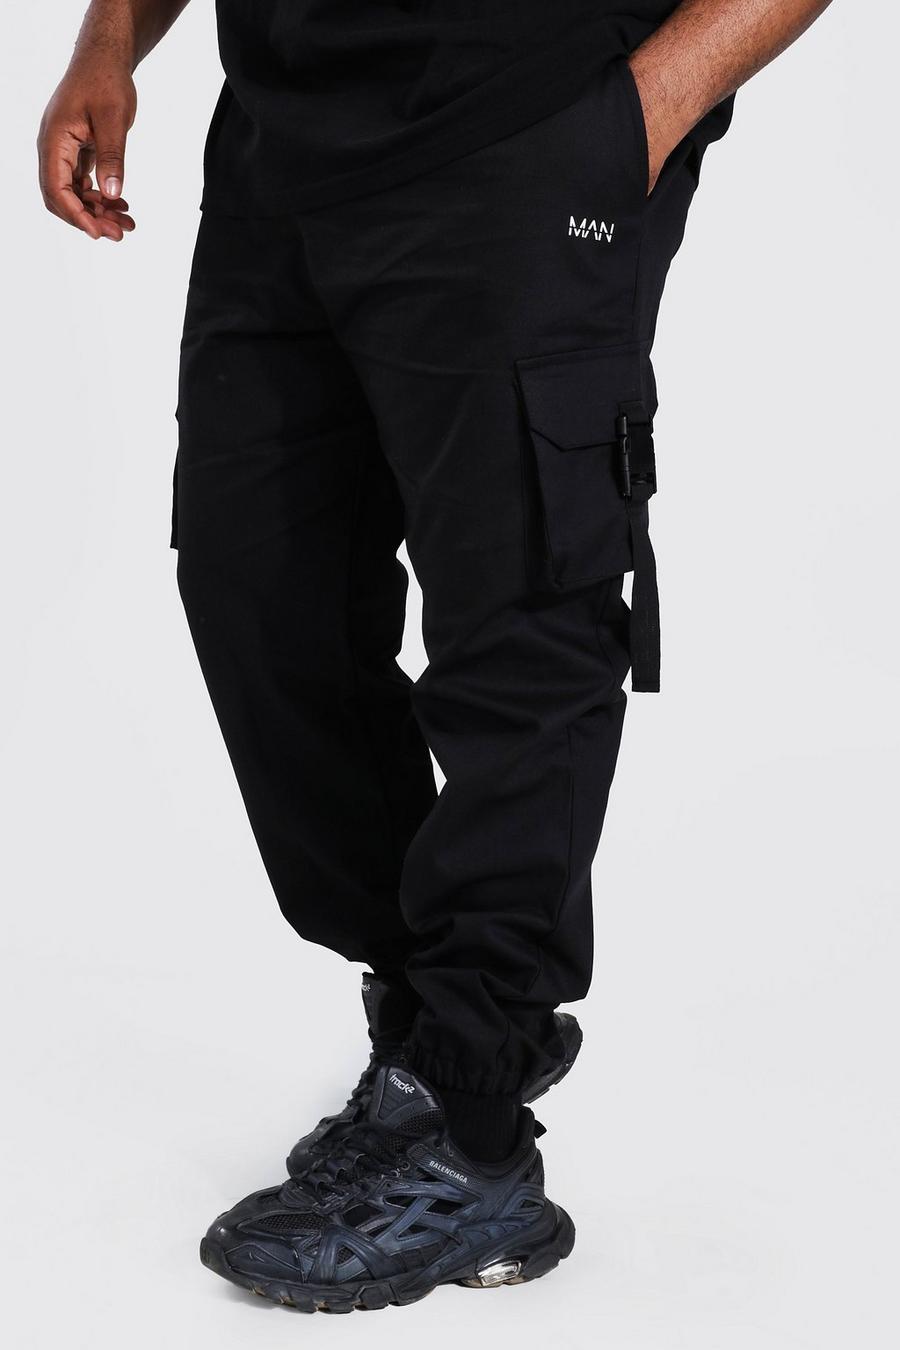 Pantalón deportivo Plus MAN Original de sarga con hebilla, Black image number 1